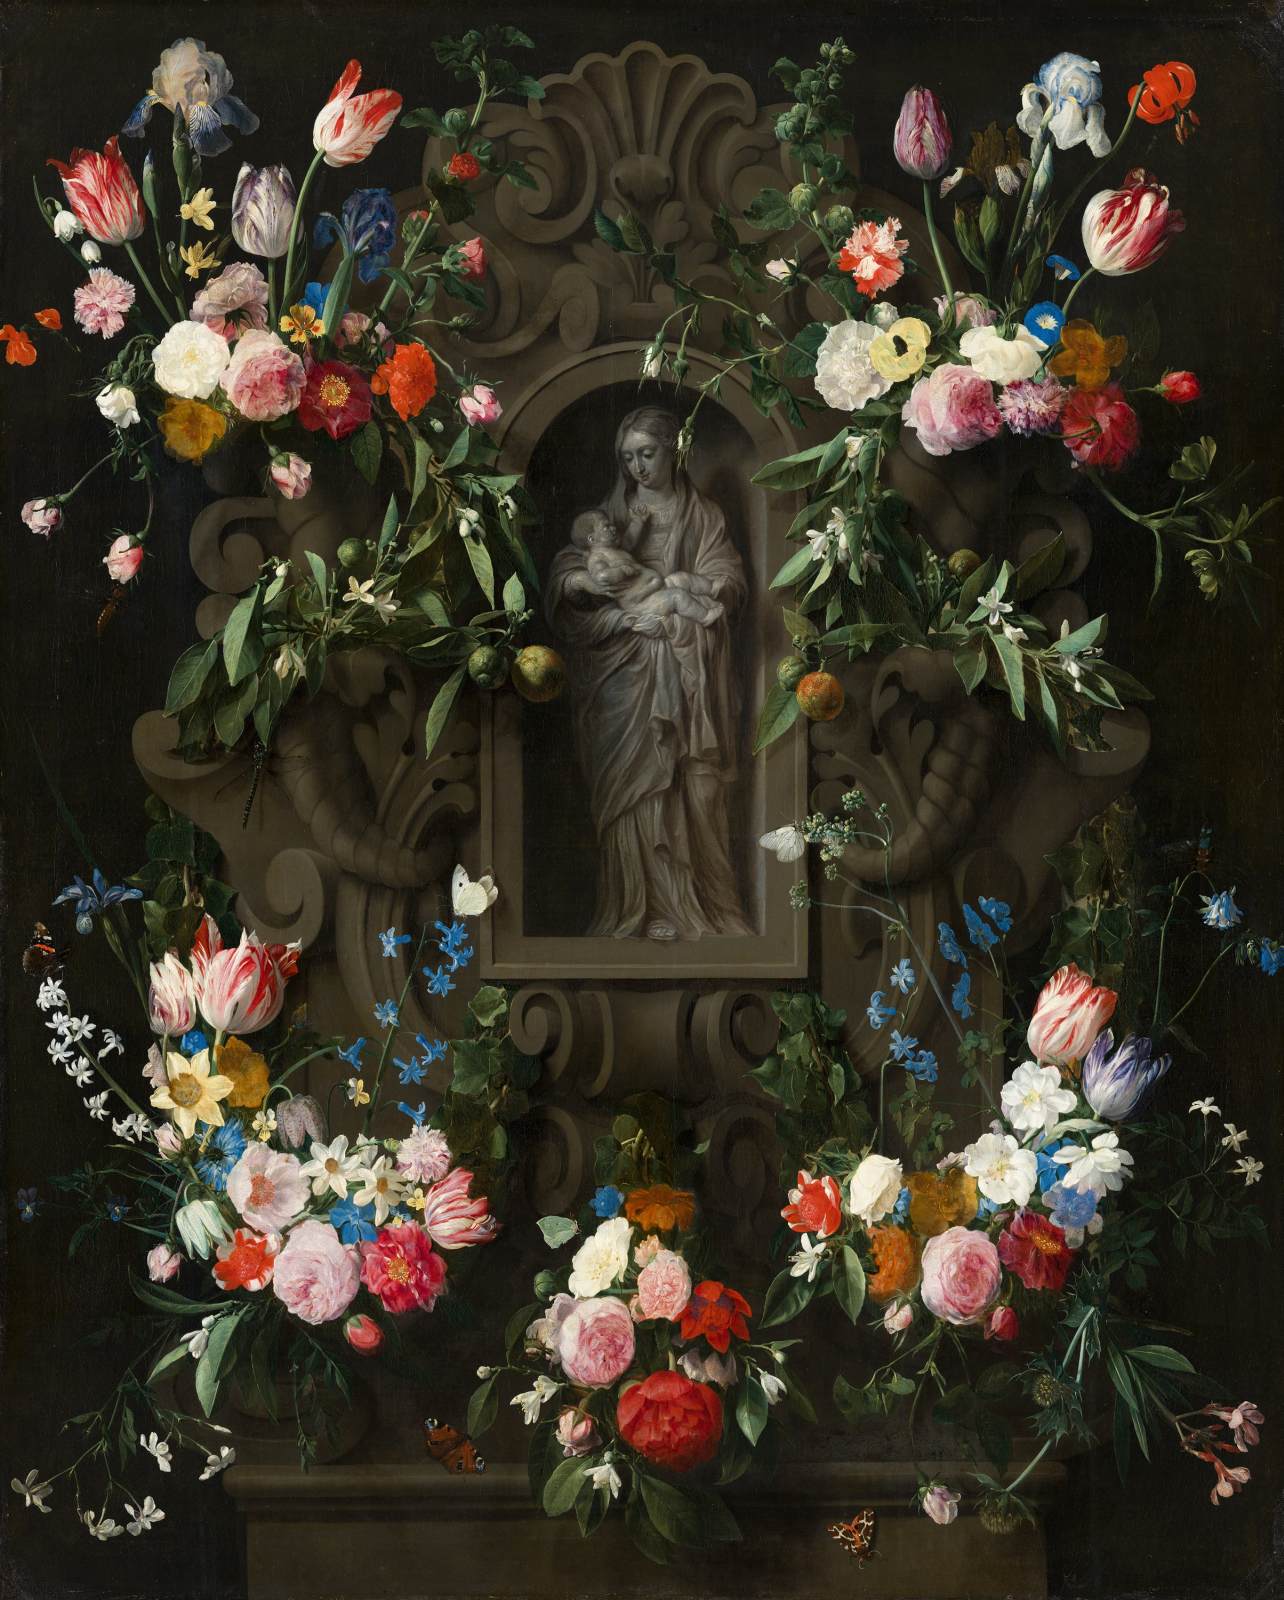 Guirnalda de Flores que Rodean una Escultura de La Virgen María